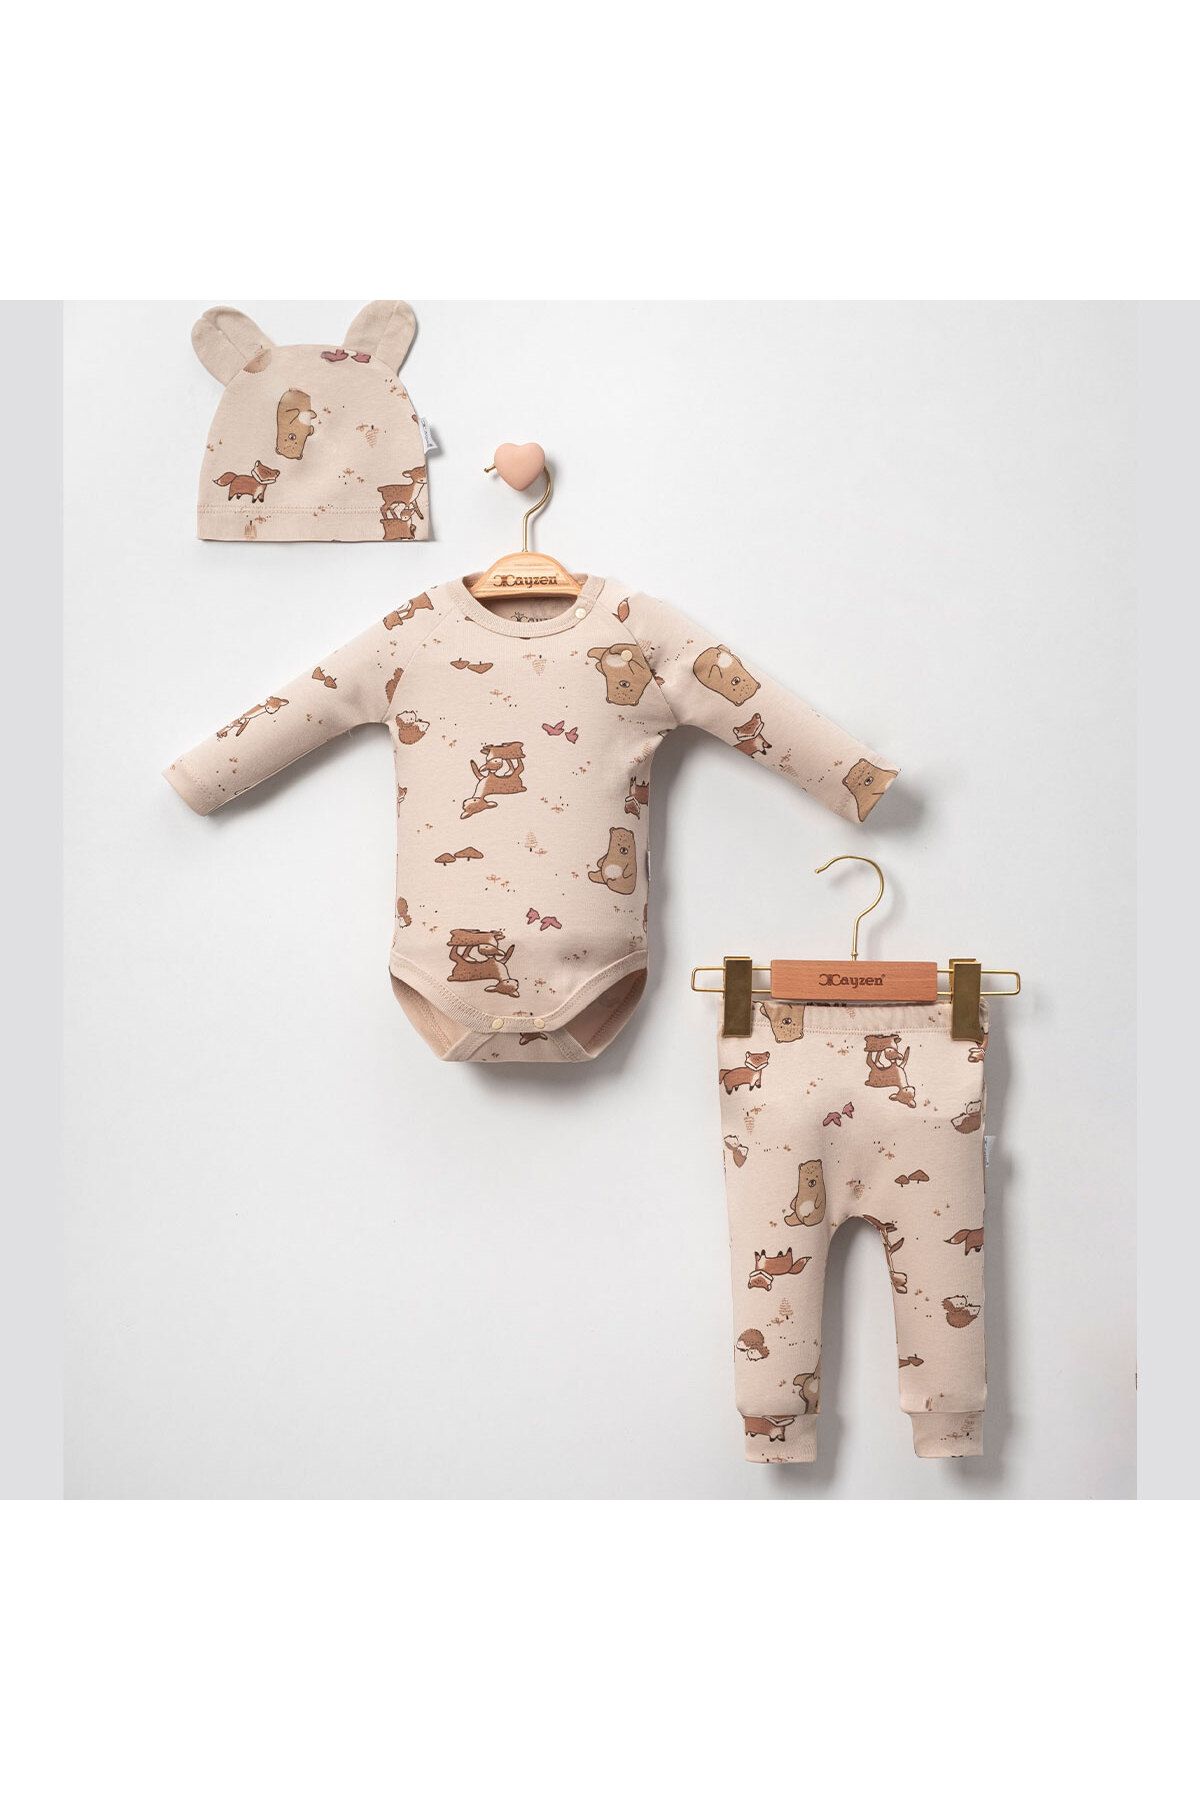 DIDuStore Sevimli Hayvan Figürlü Erkek Bebek Kıyafeti: Şapkalı Body ve Pantolon Takımı